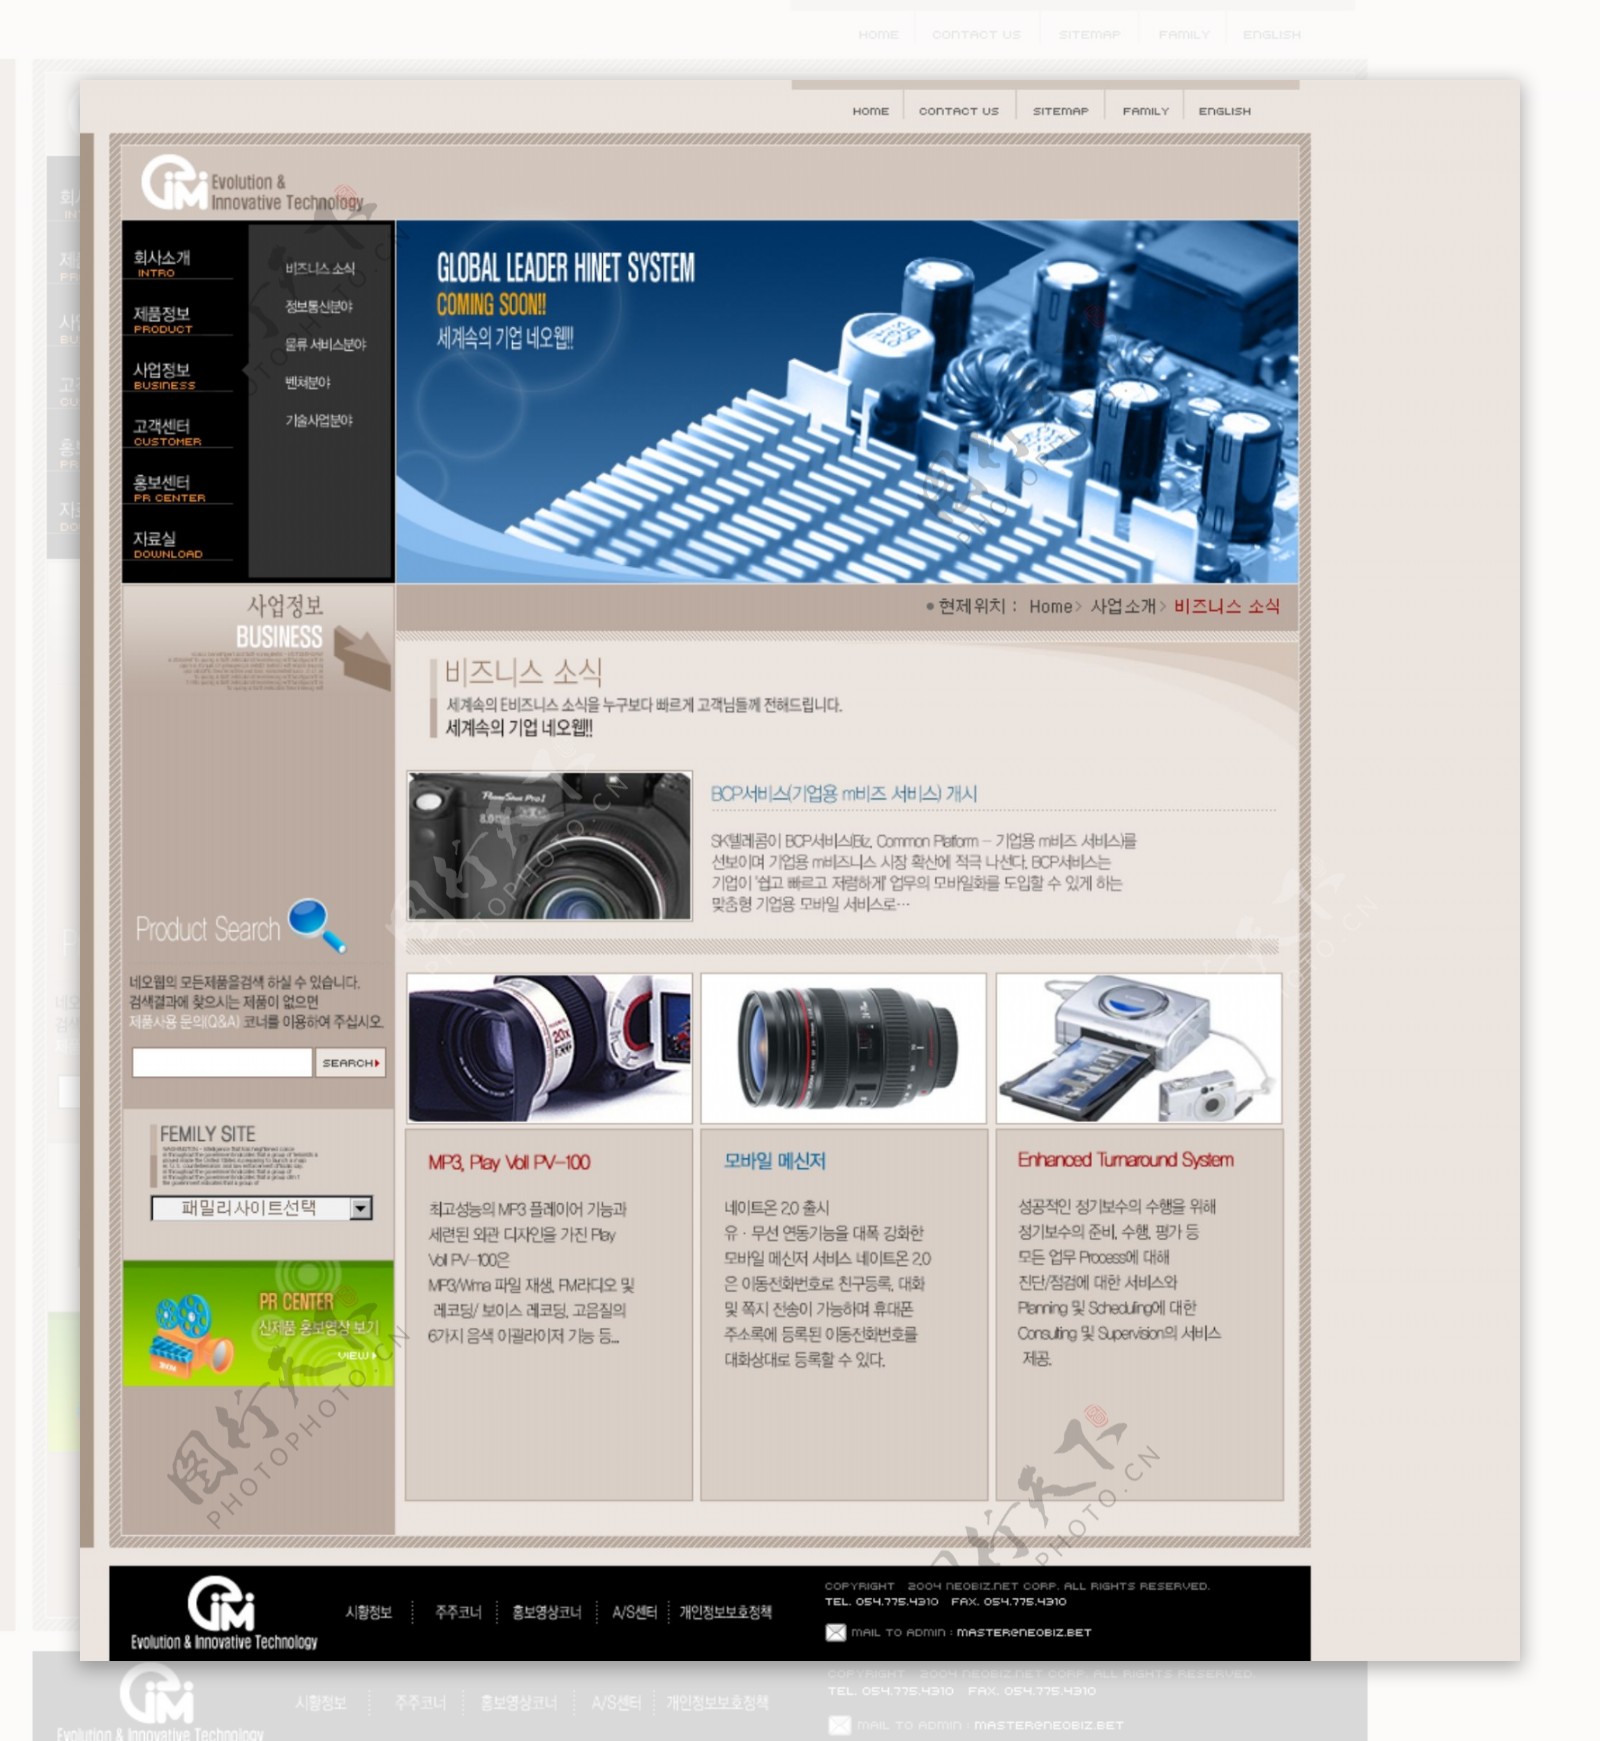 韩国数码科技公司浅褐色网站